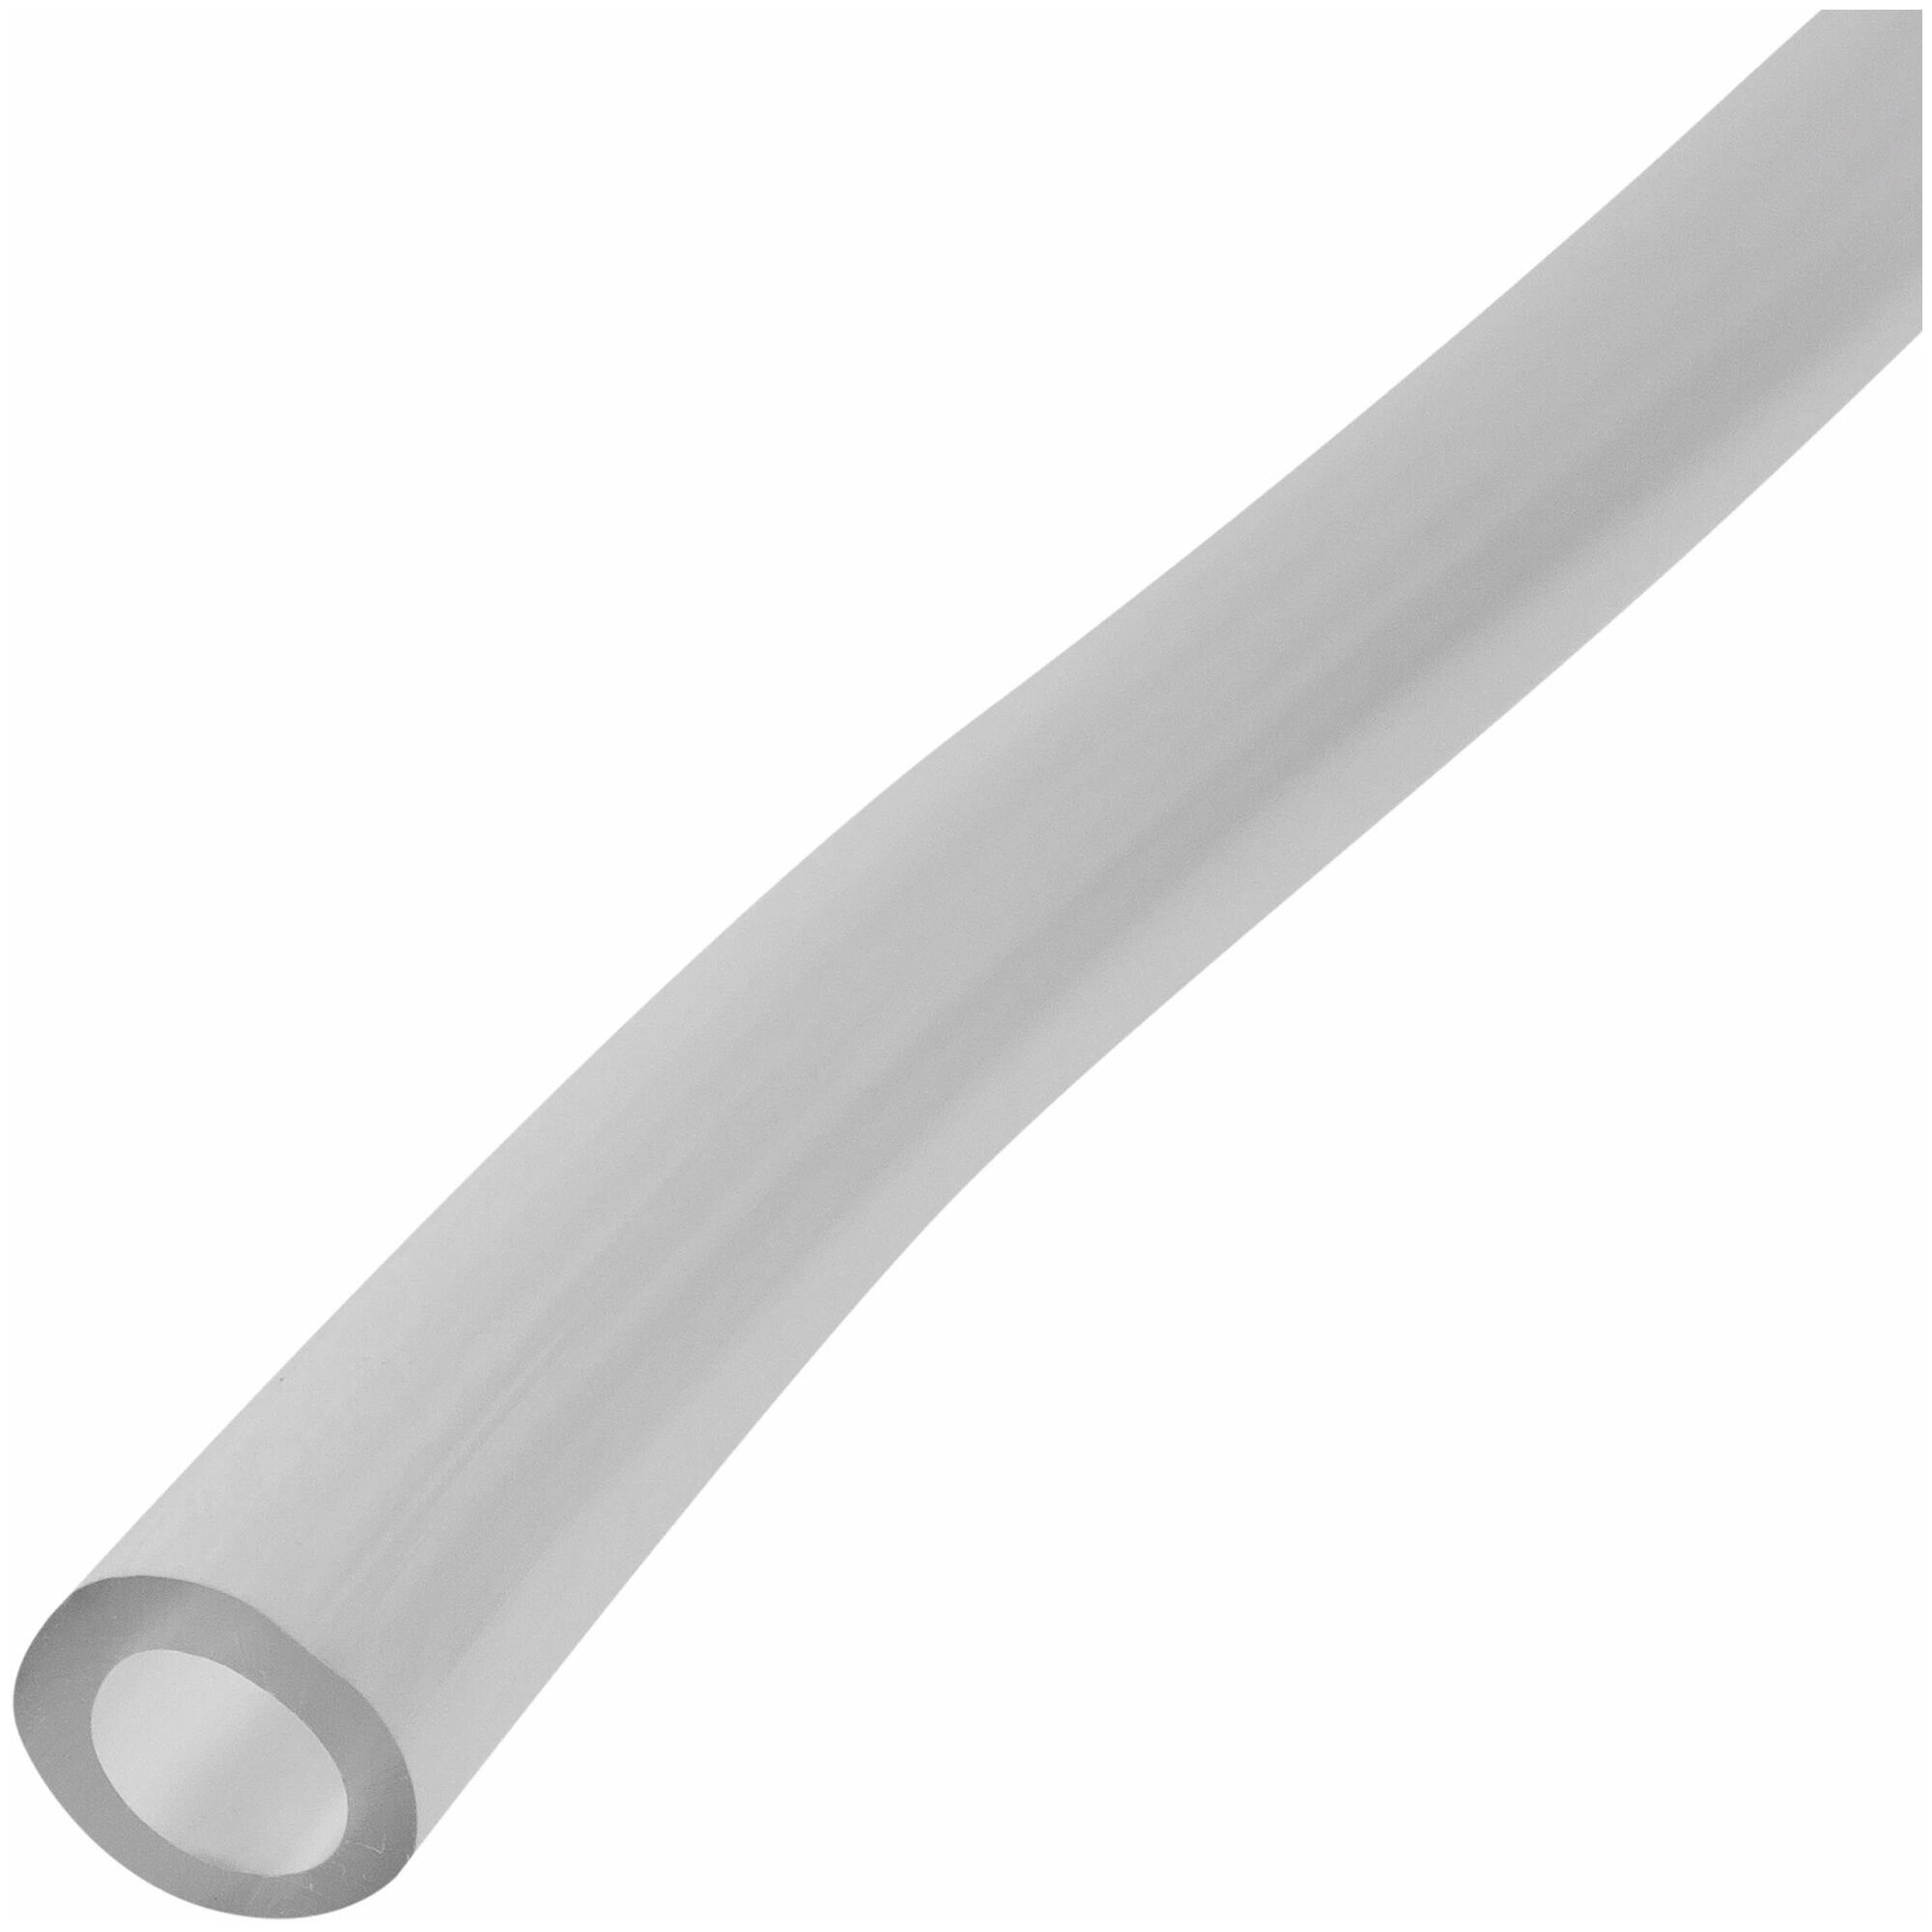 Трубка дренажная для водонагревателя 2 м, прочный гибкий пластик, внутренний диаметр 6 мм, трубка легкая по весу, удобная в использовании